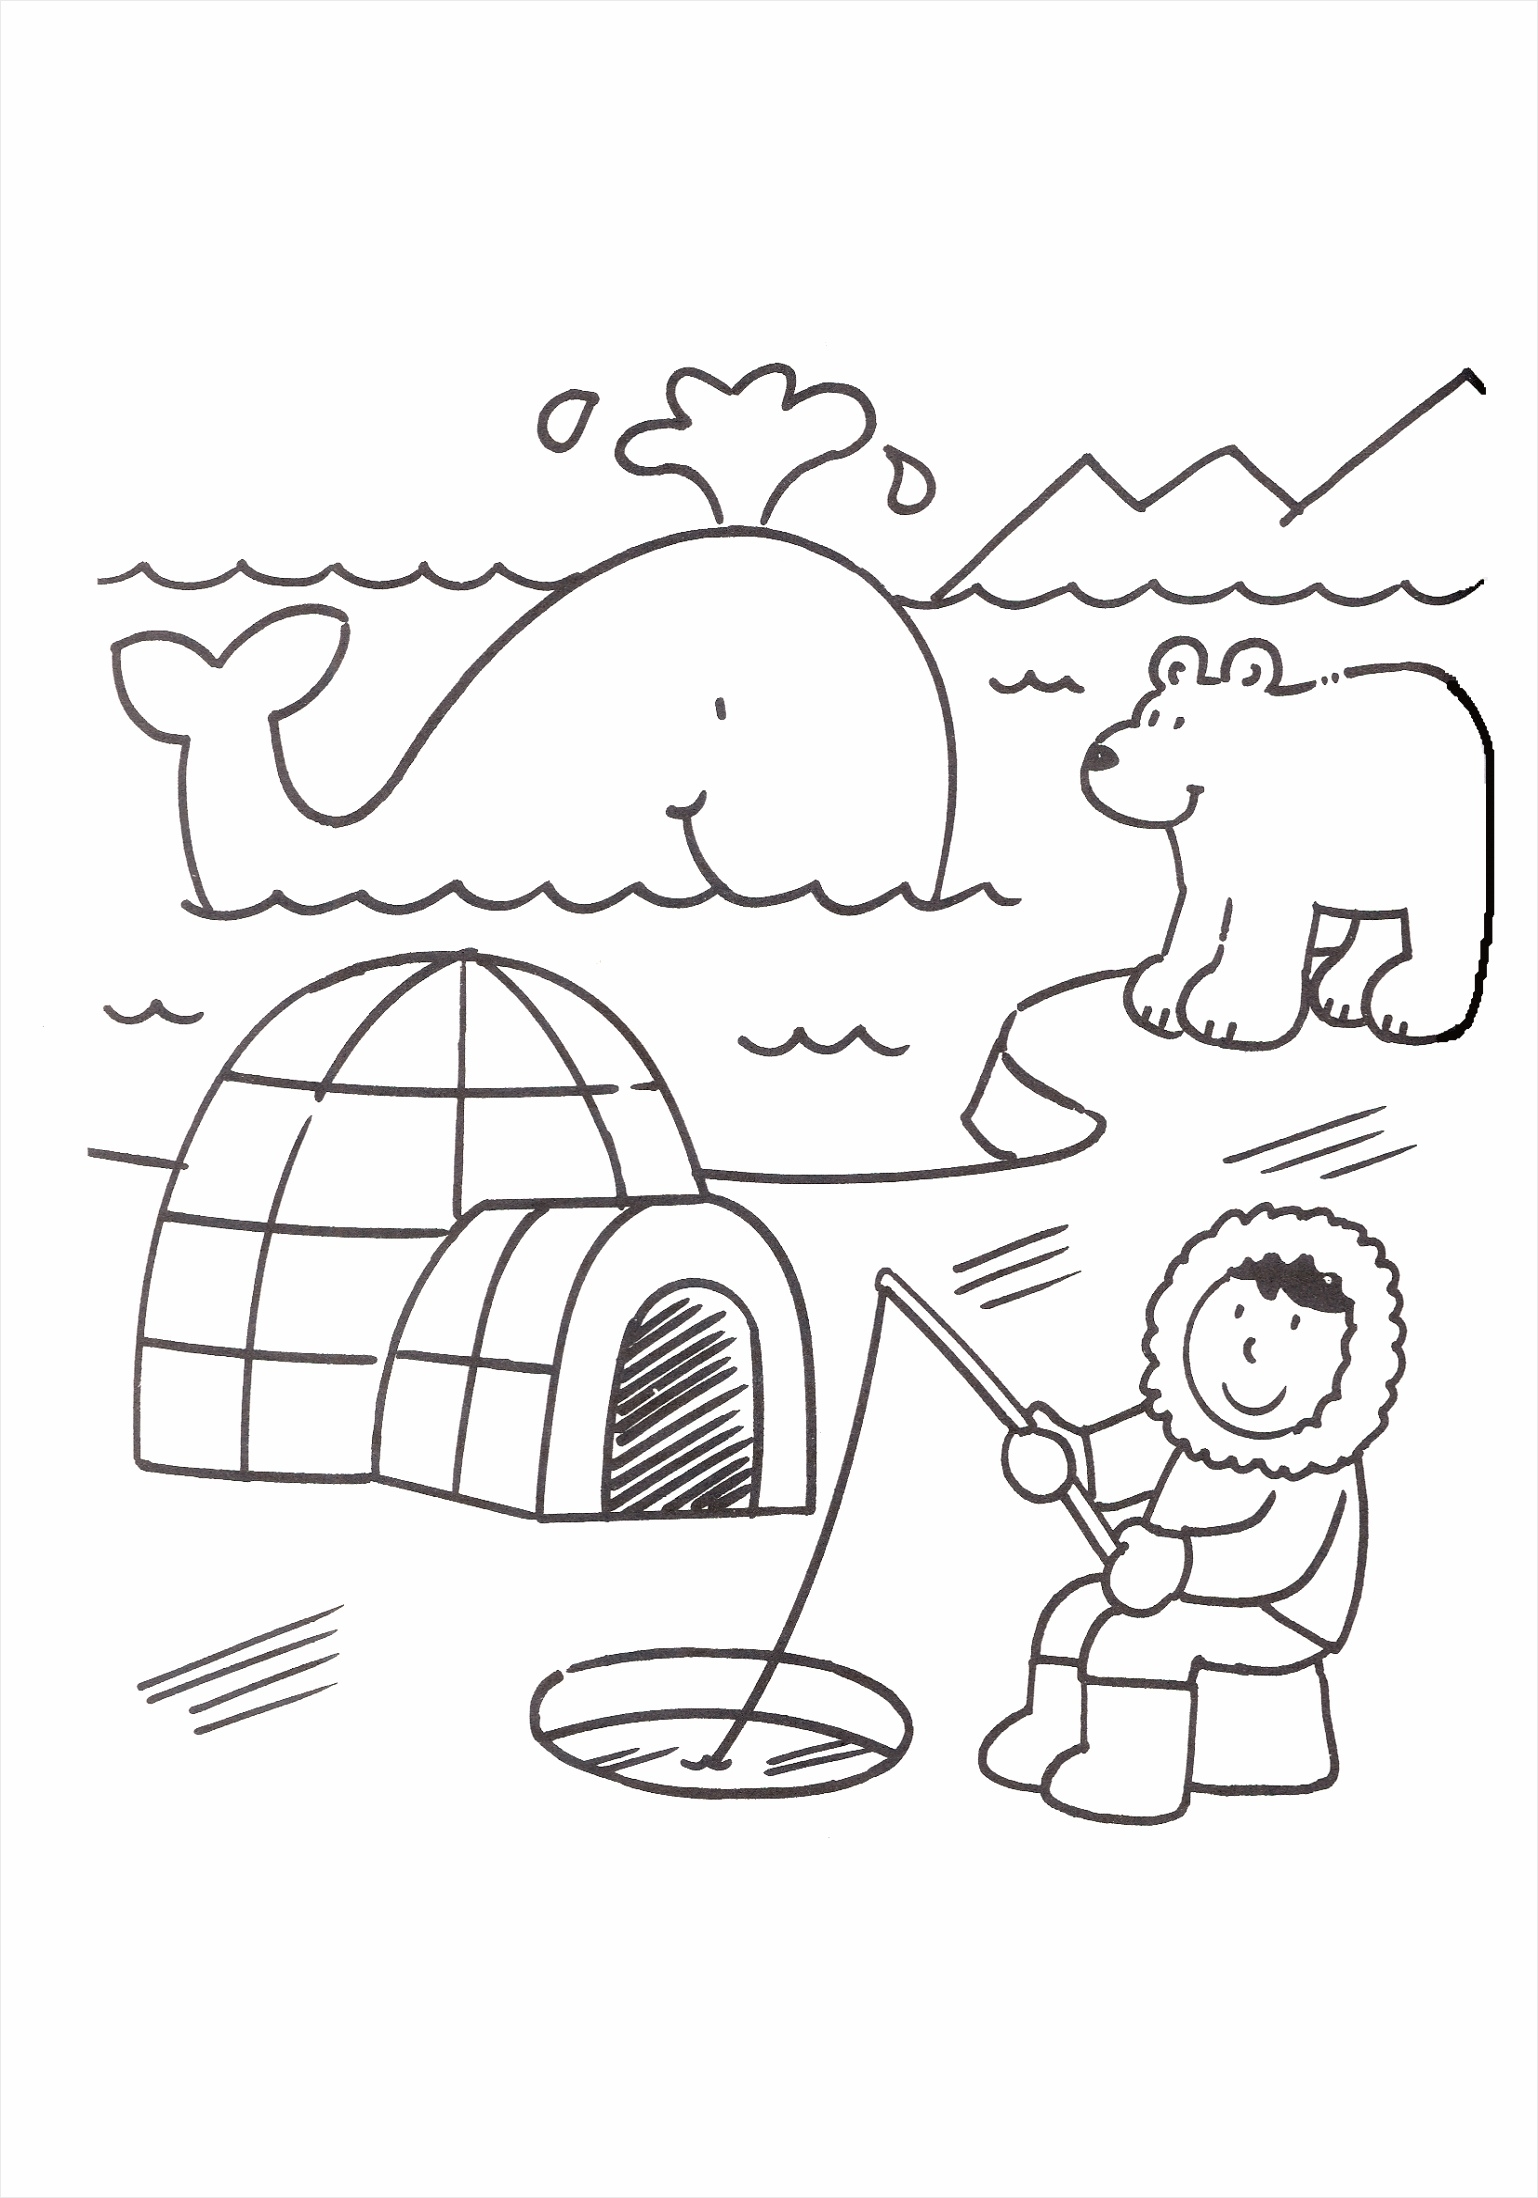 Северный Полюс: истории из жизни, советы, новости, юмор и картинки — Горячее, страница 5 | Пикабу